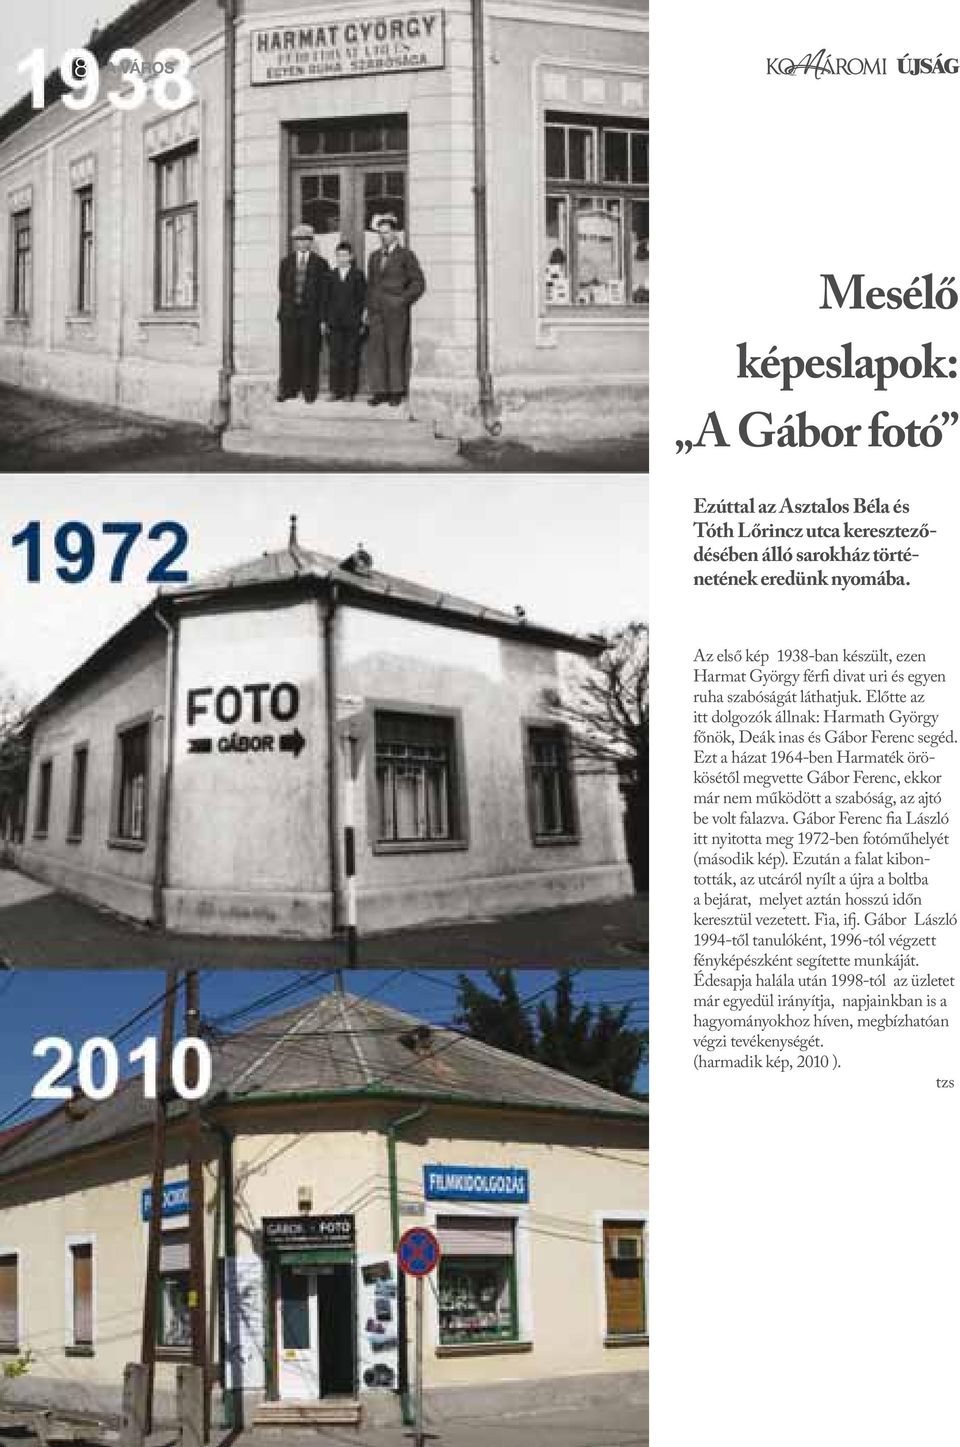 Ezt a házat 1964-ben Harmaték örökösétől megvette Gábor Ferenc, ekkor már nem működött a szabóság, az ajtó be volt falazva.